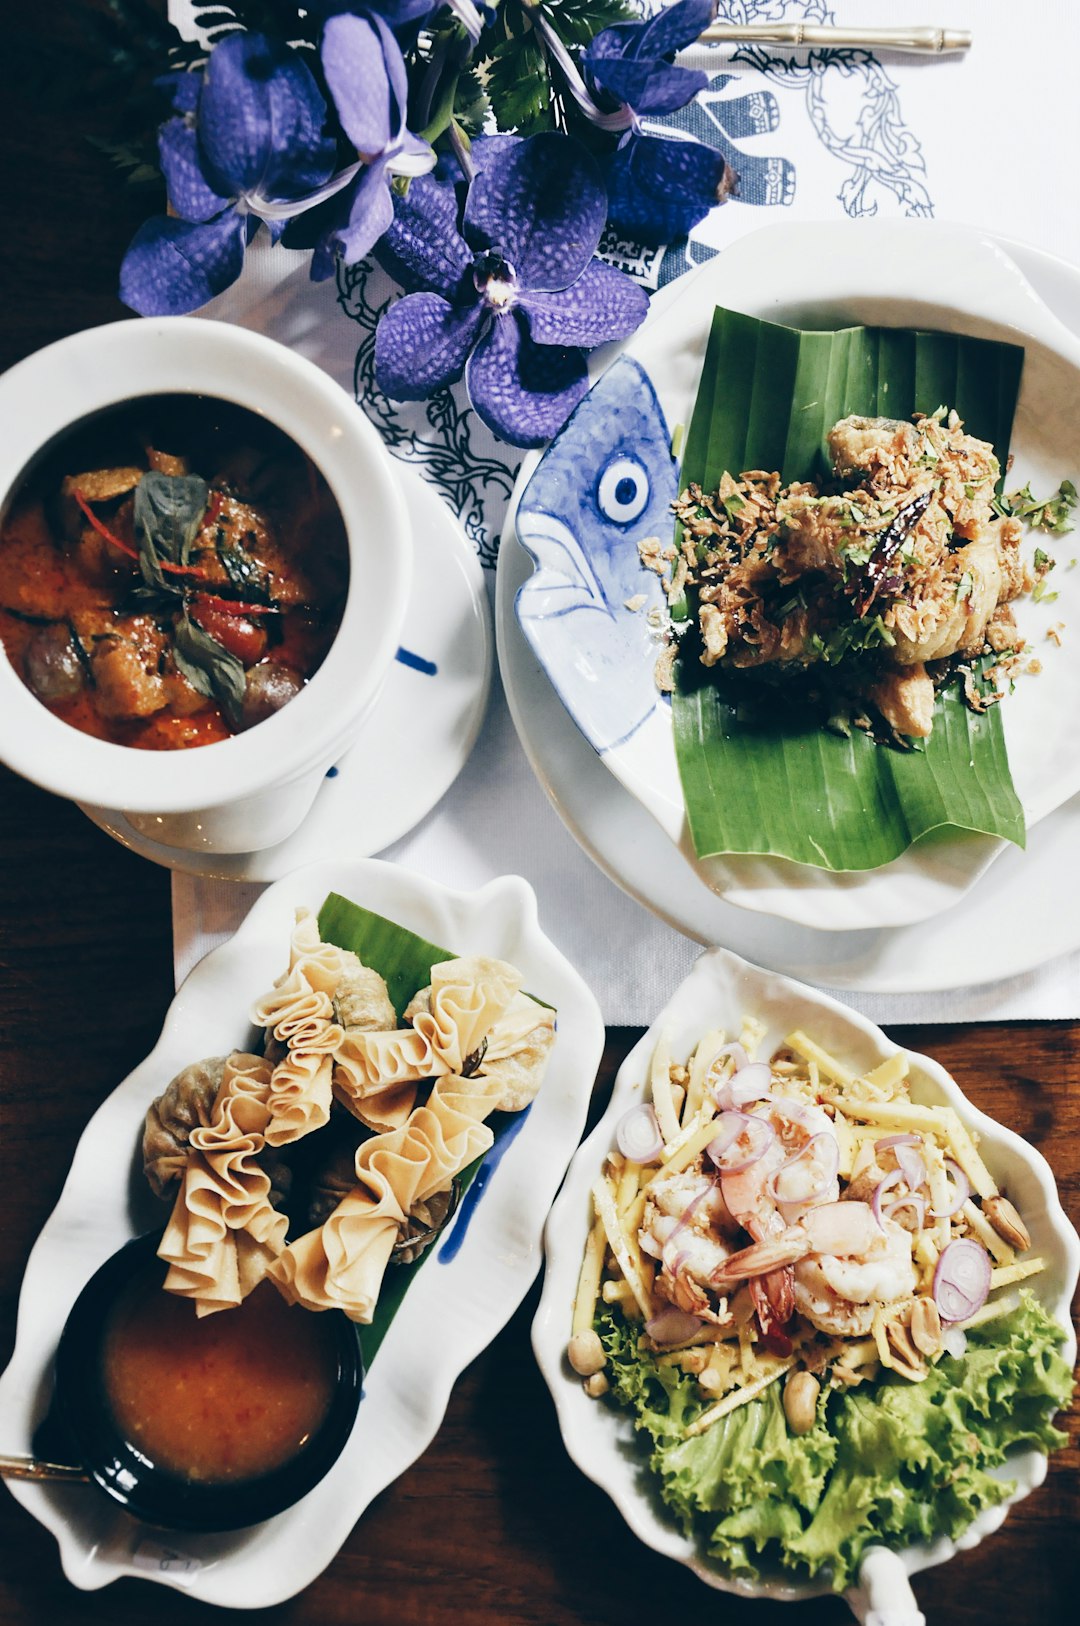 Cuisine of Thailand